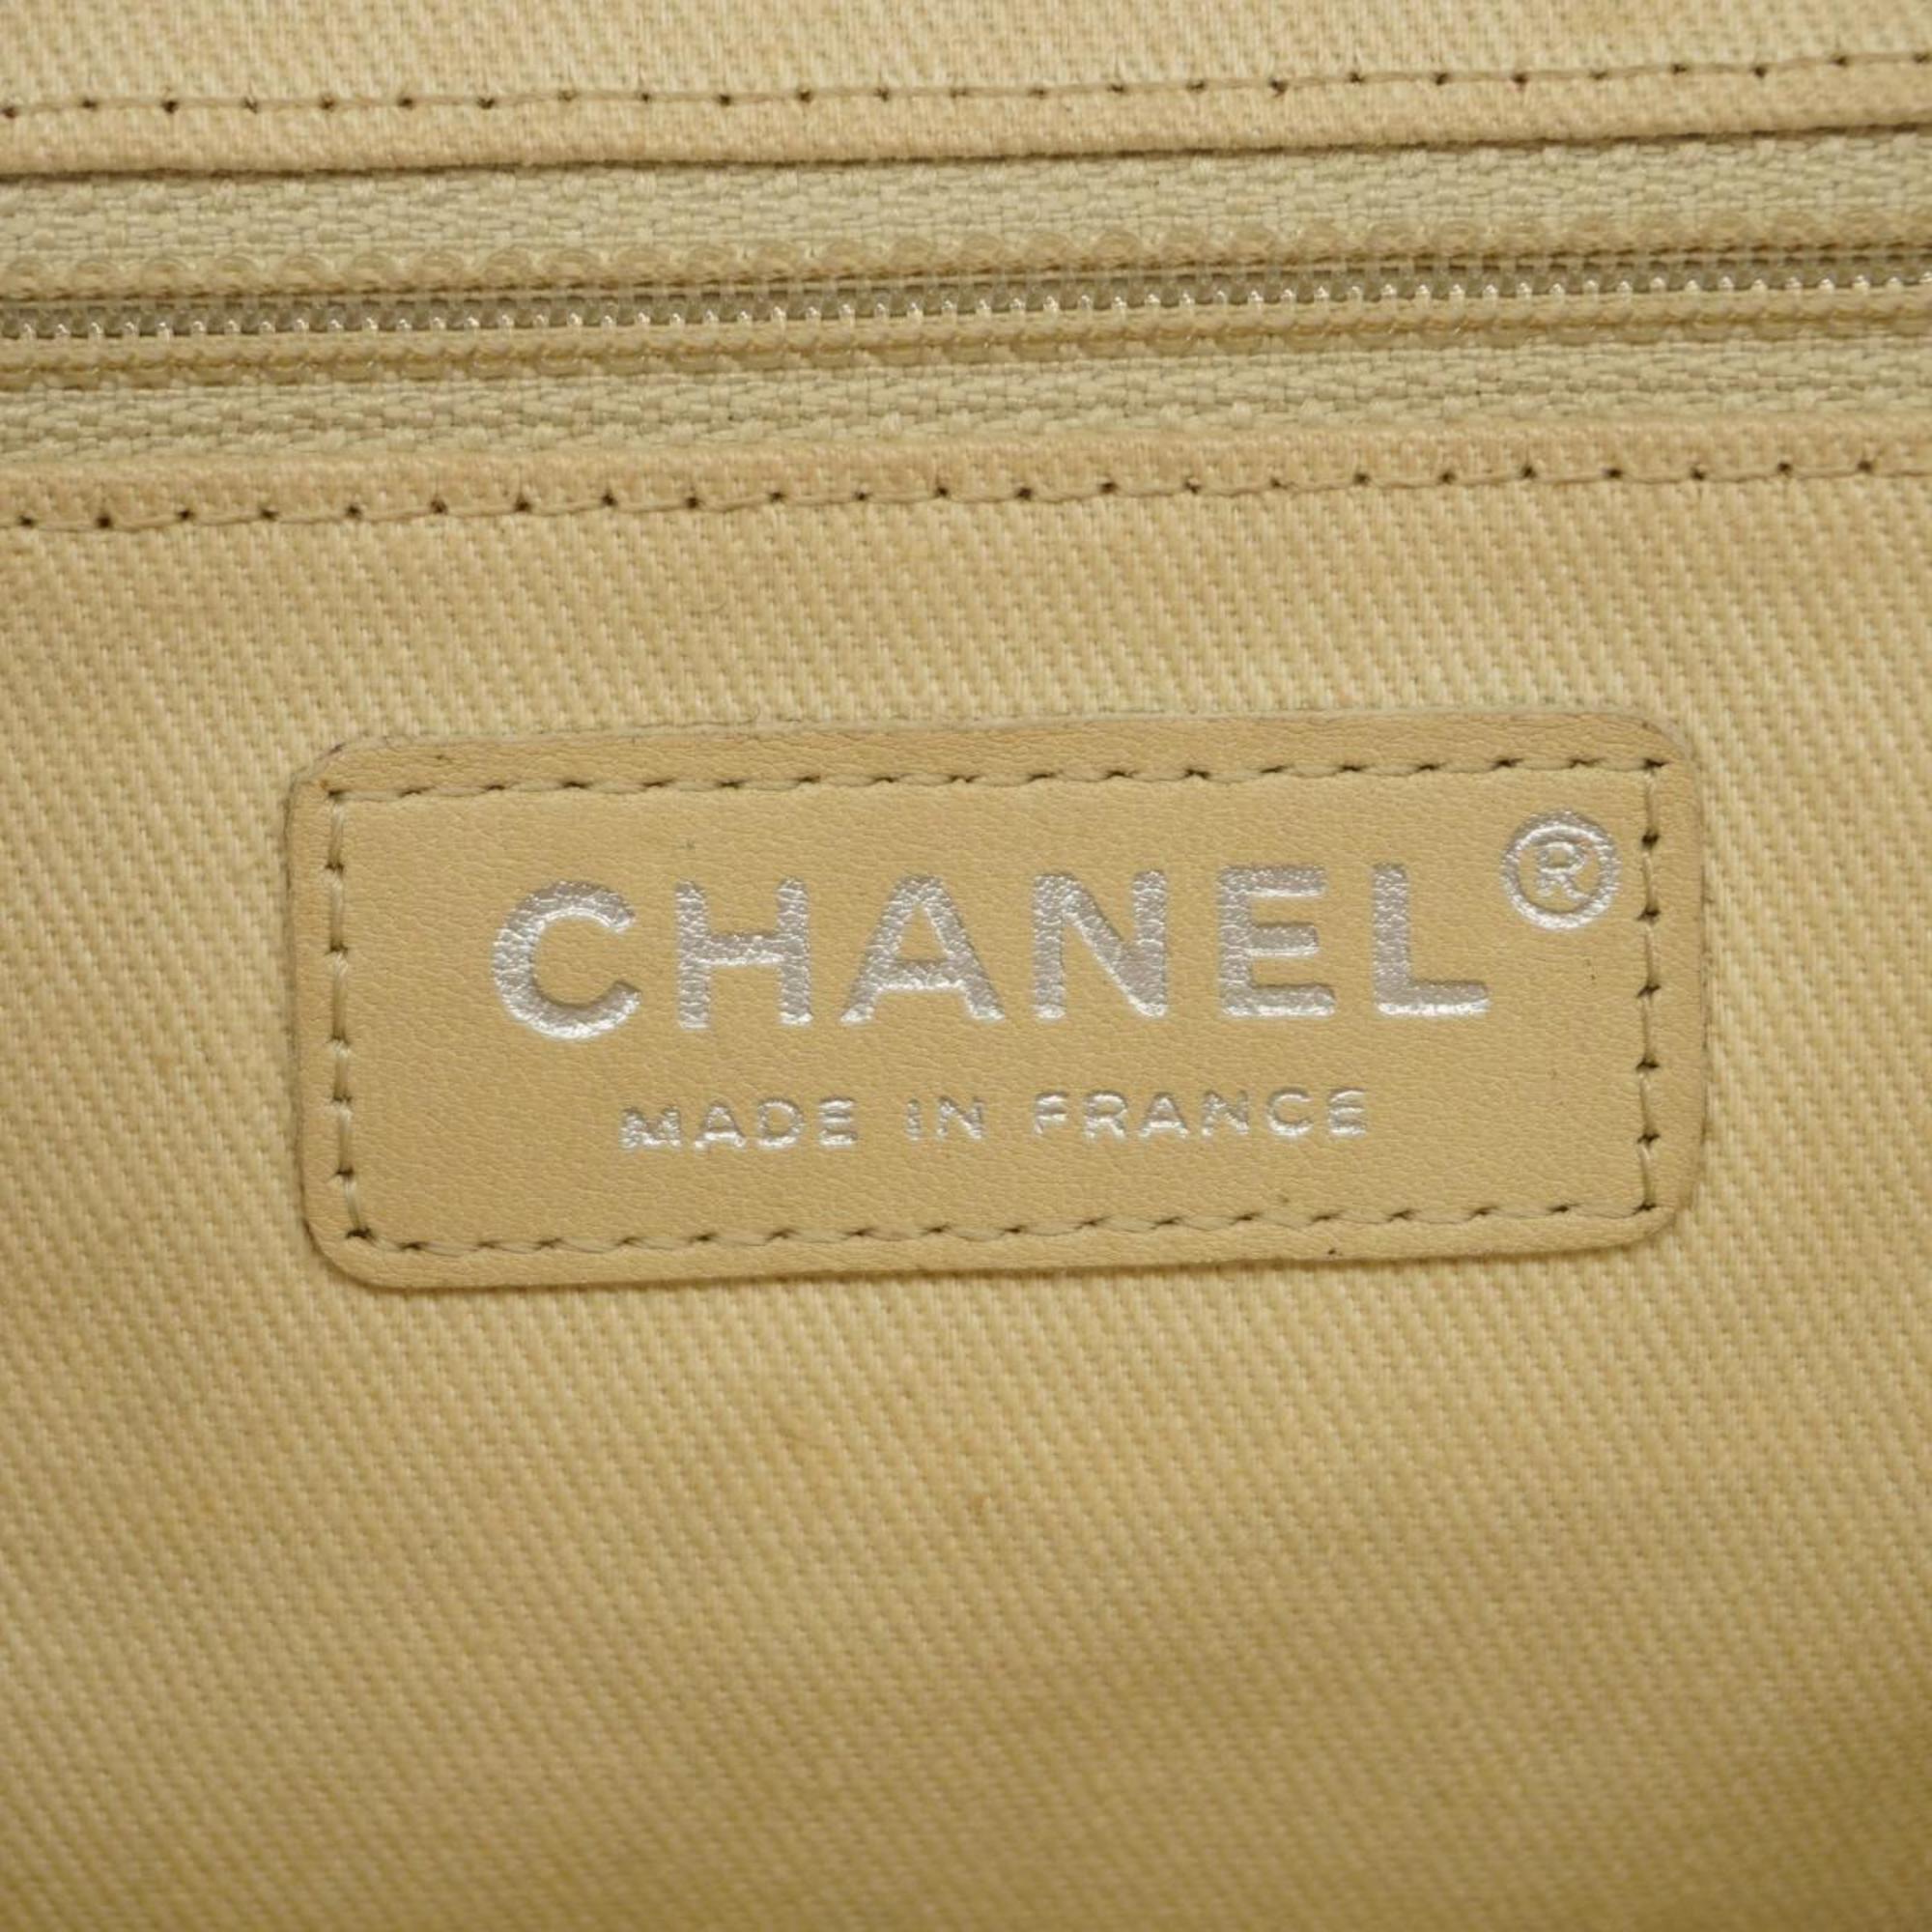 シャネル(Chanel) シャネル ショルダーバッグ マトラッセ チェーンショルダー キャビアスキン レッド   レディース